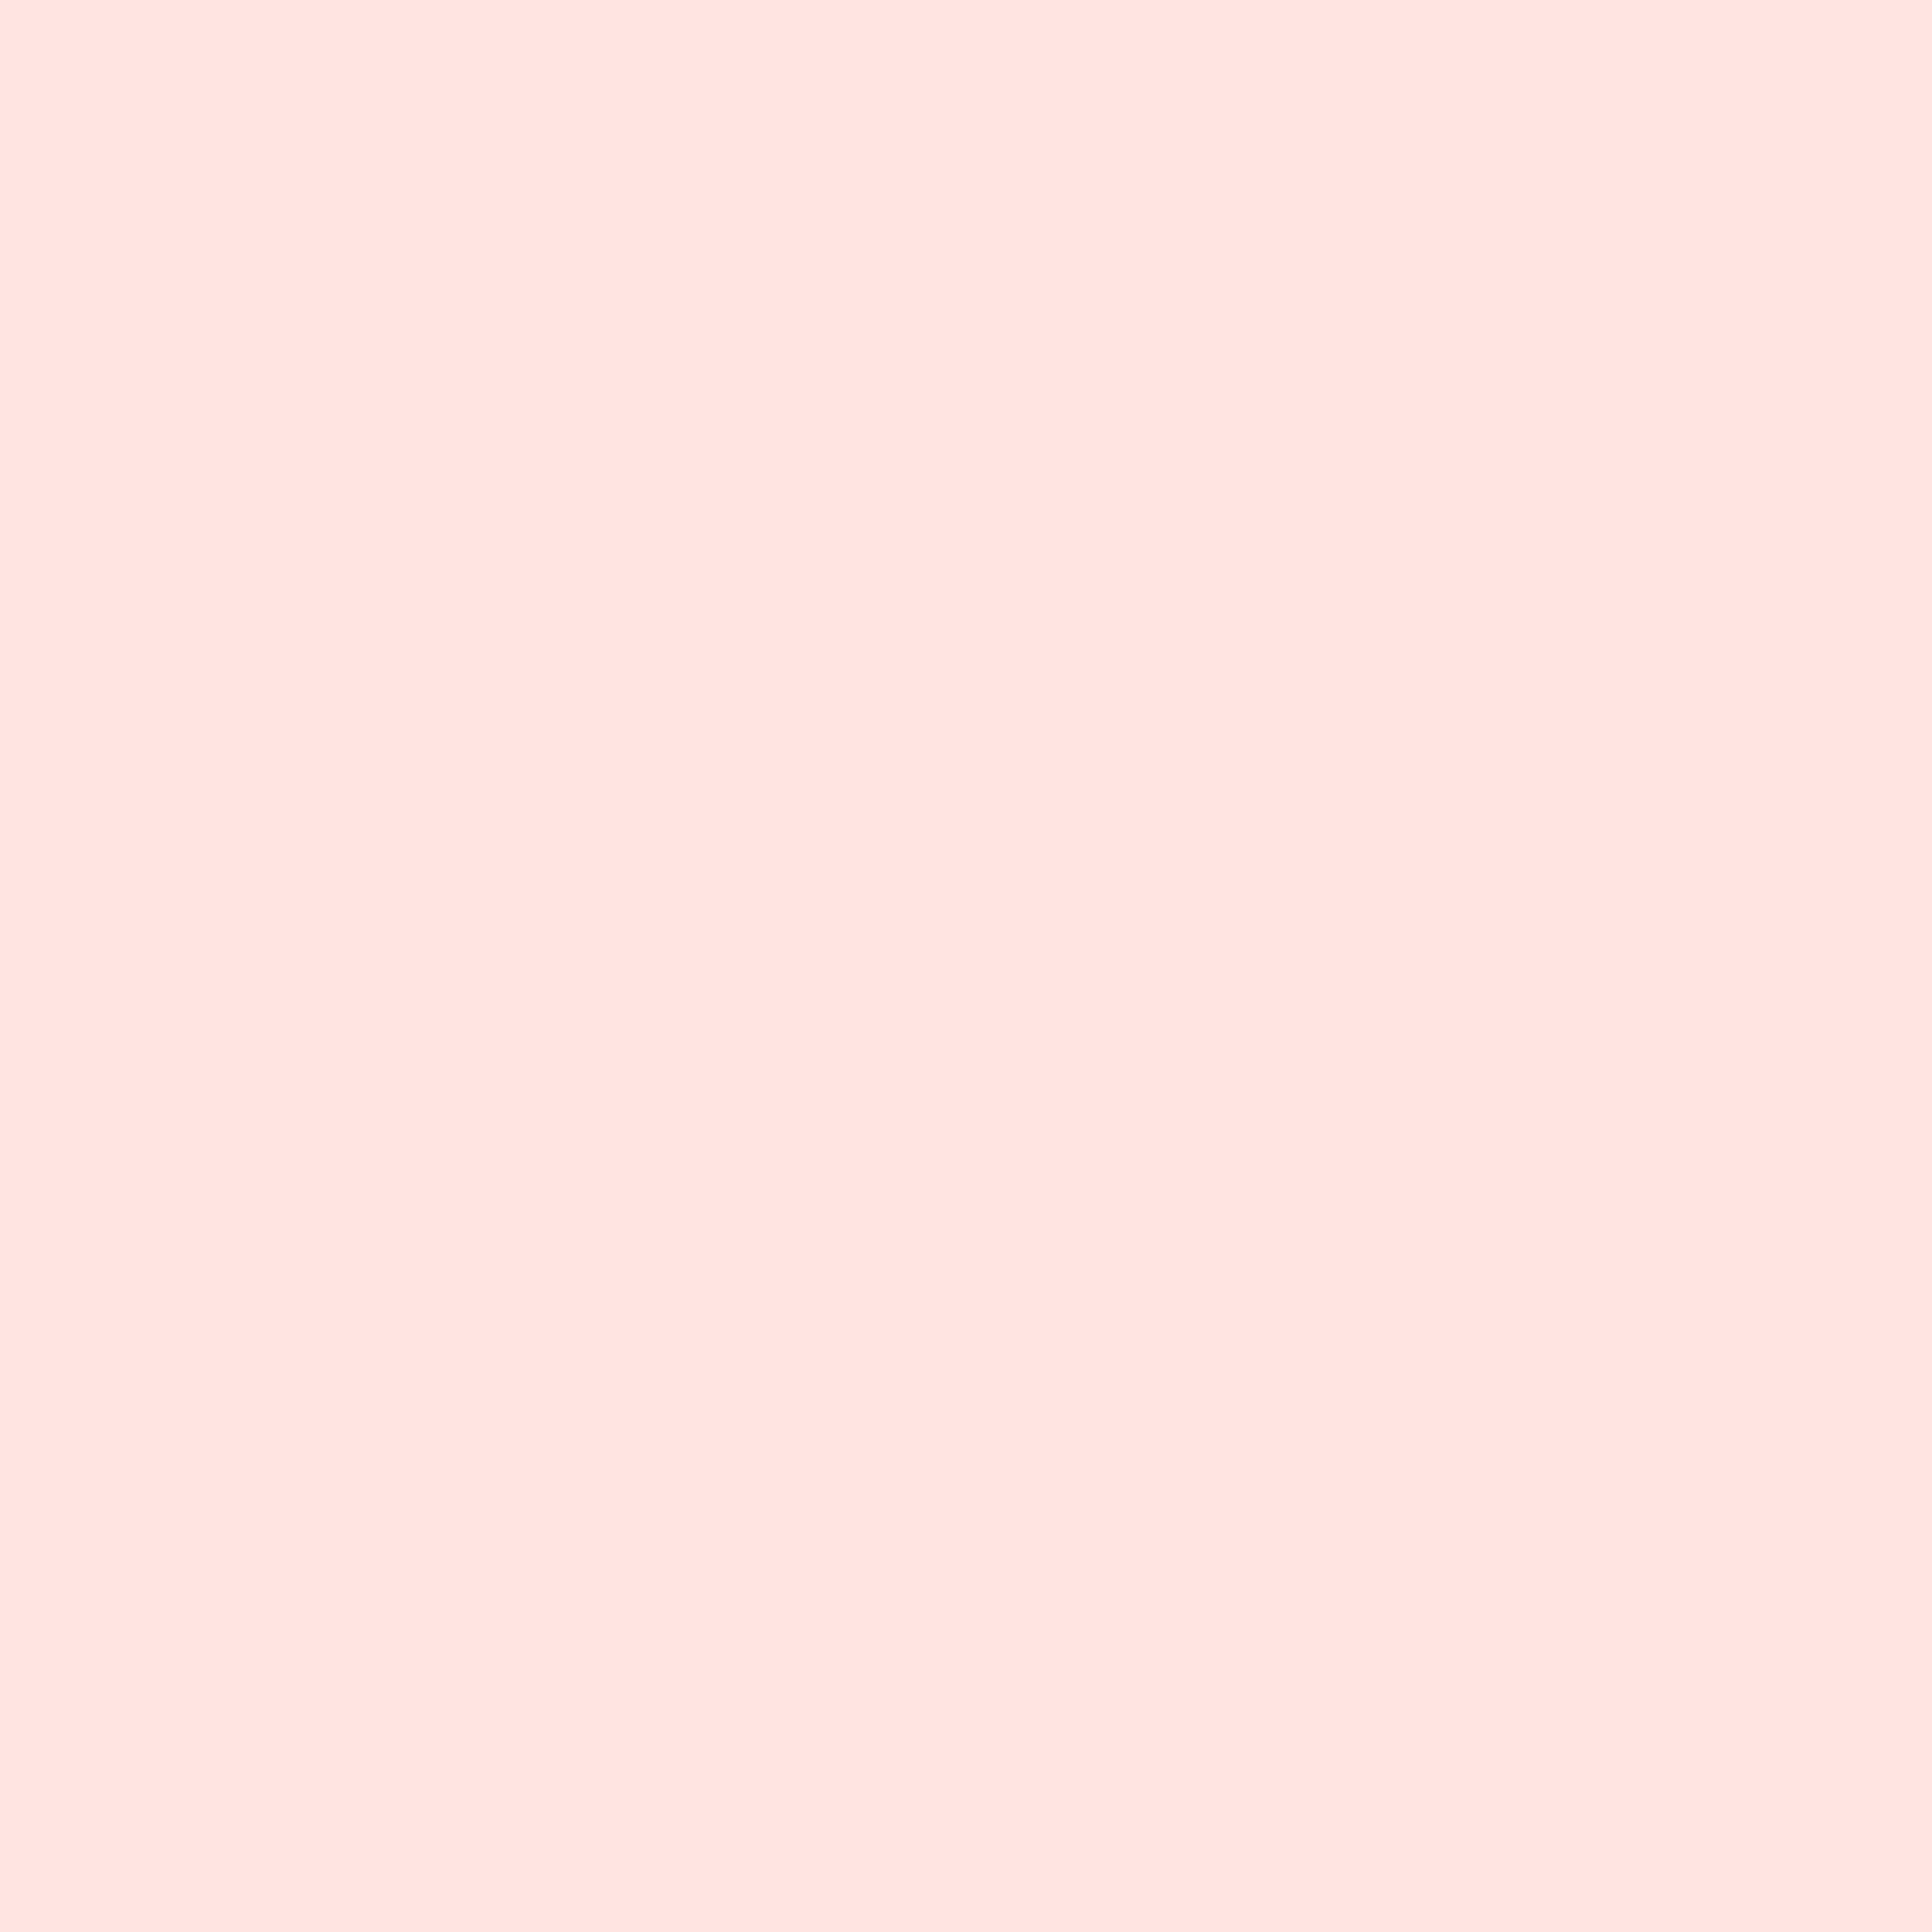 2732x2732 Misty Rose Solid Color Background